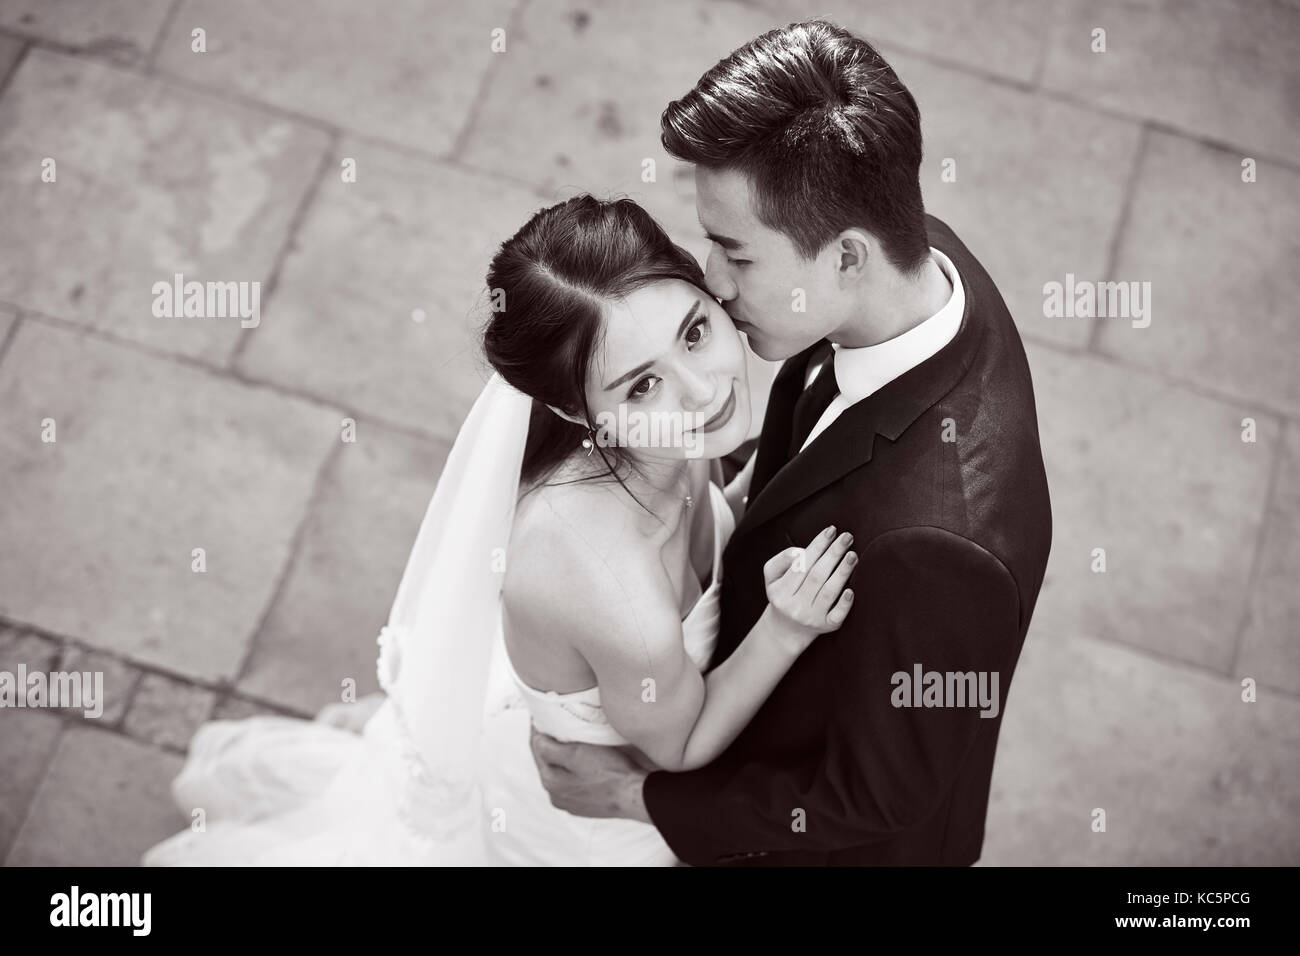 Giovani asiatici sposa e lo sposo abbracciando kissing dancing in aria aperta, ad alto angolo di visione, in bianco e nero. Foto Stock